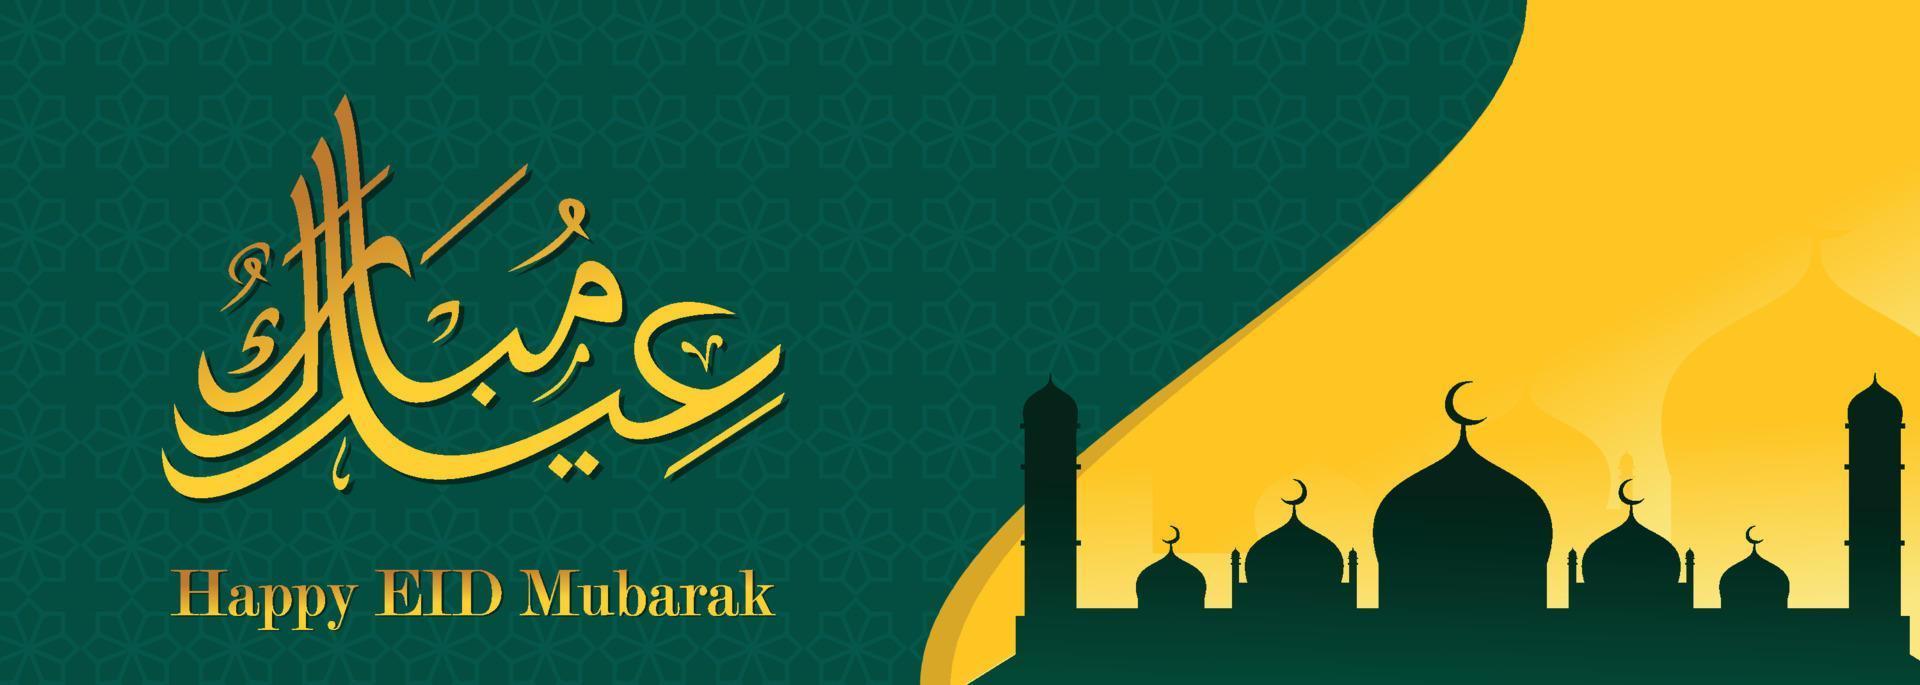 fond islamique eid mubarak, illustration de bannière happy eid mubarak, carte de voeux islamique religion célébration musulmane. calligraphie arabe moderne vecteur